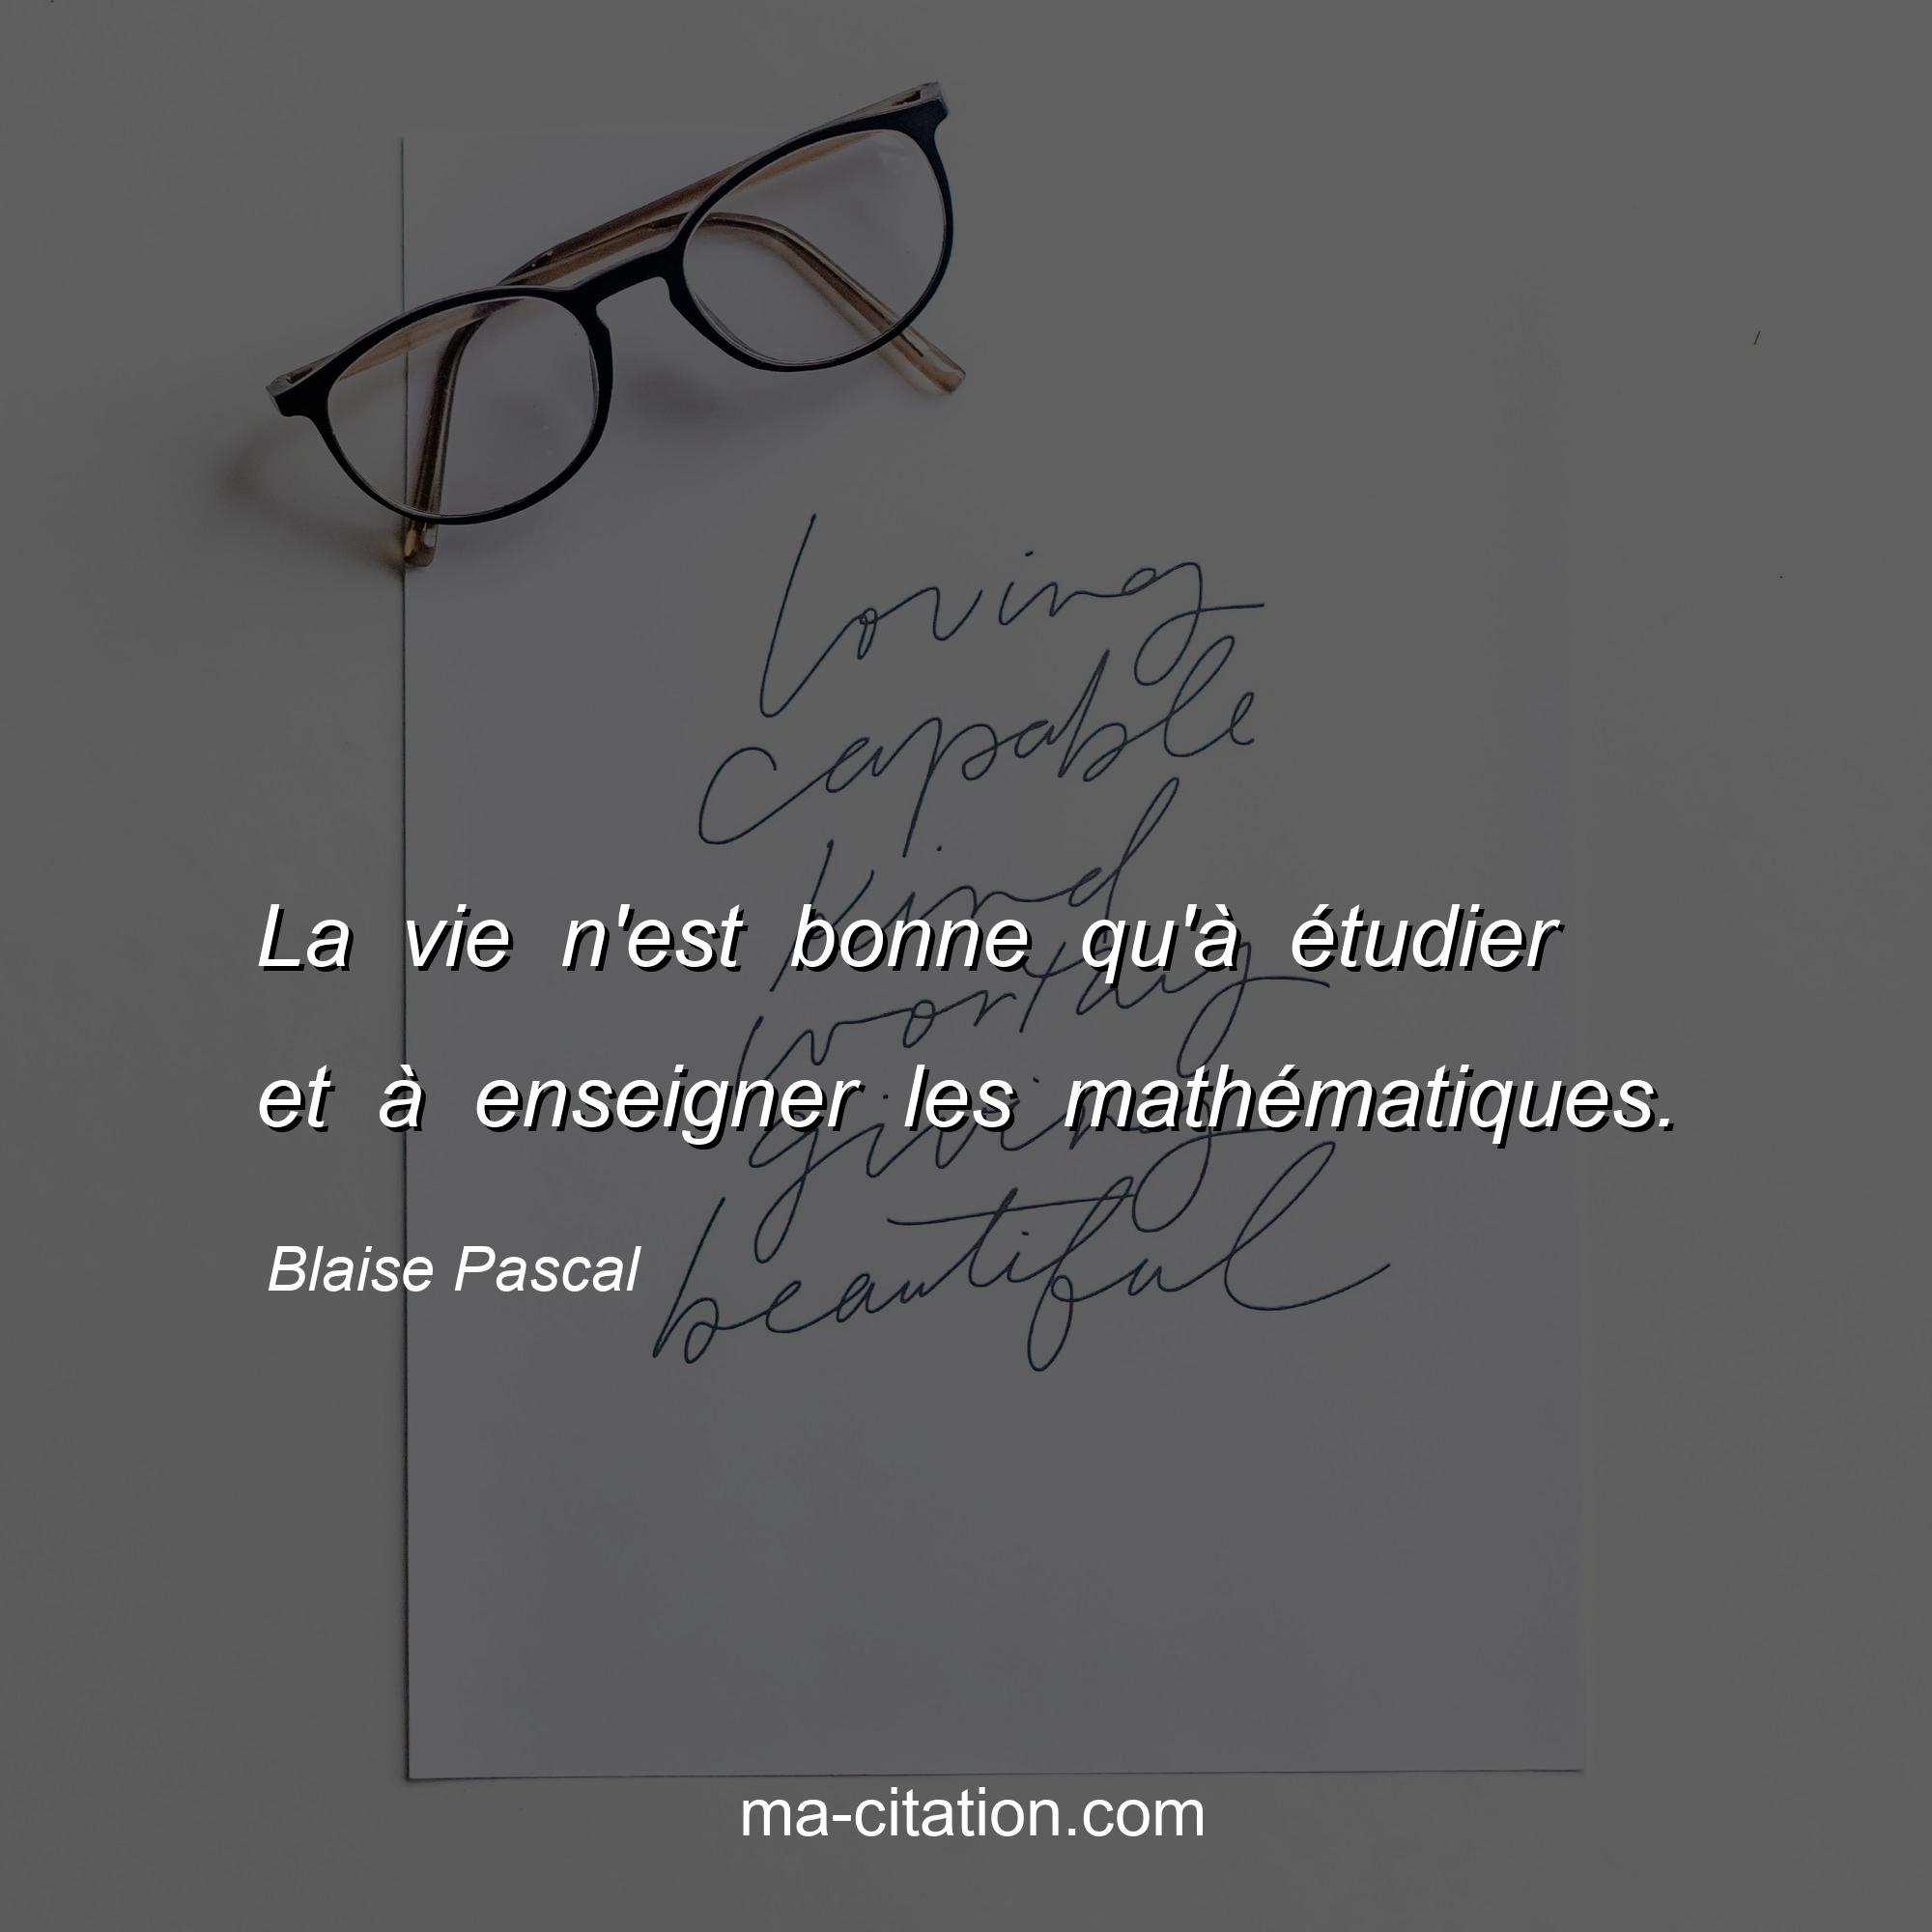 Blaise Pascal : La vie n'est bonne qu'à étudier et à enseigner les mathématiques.